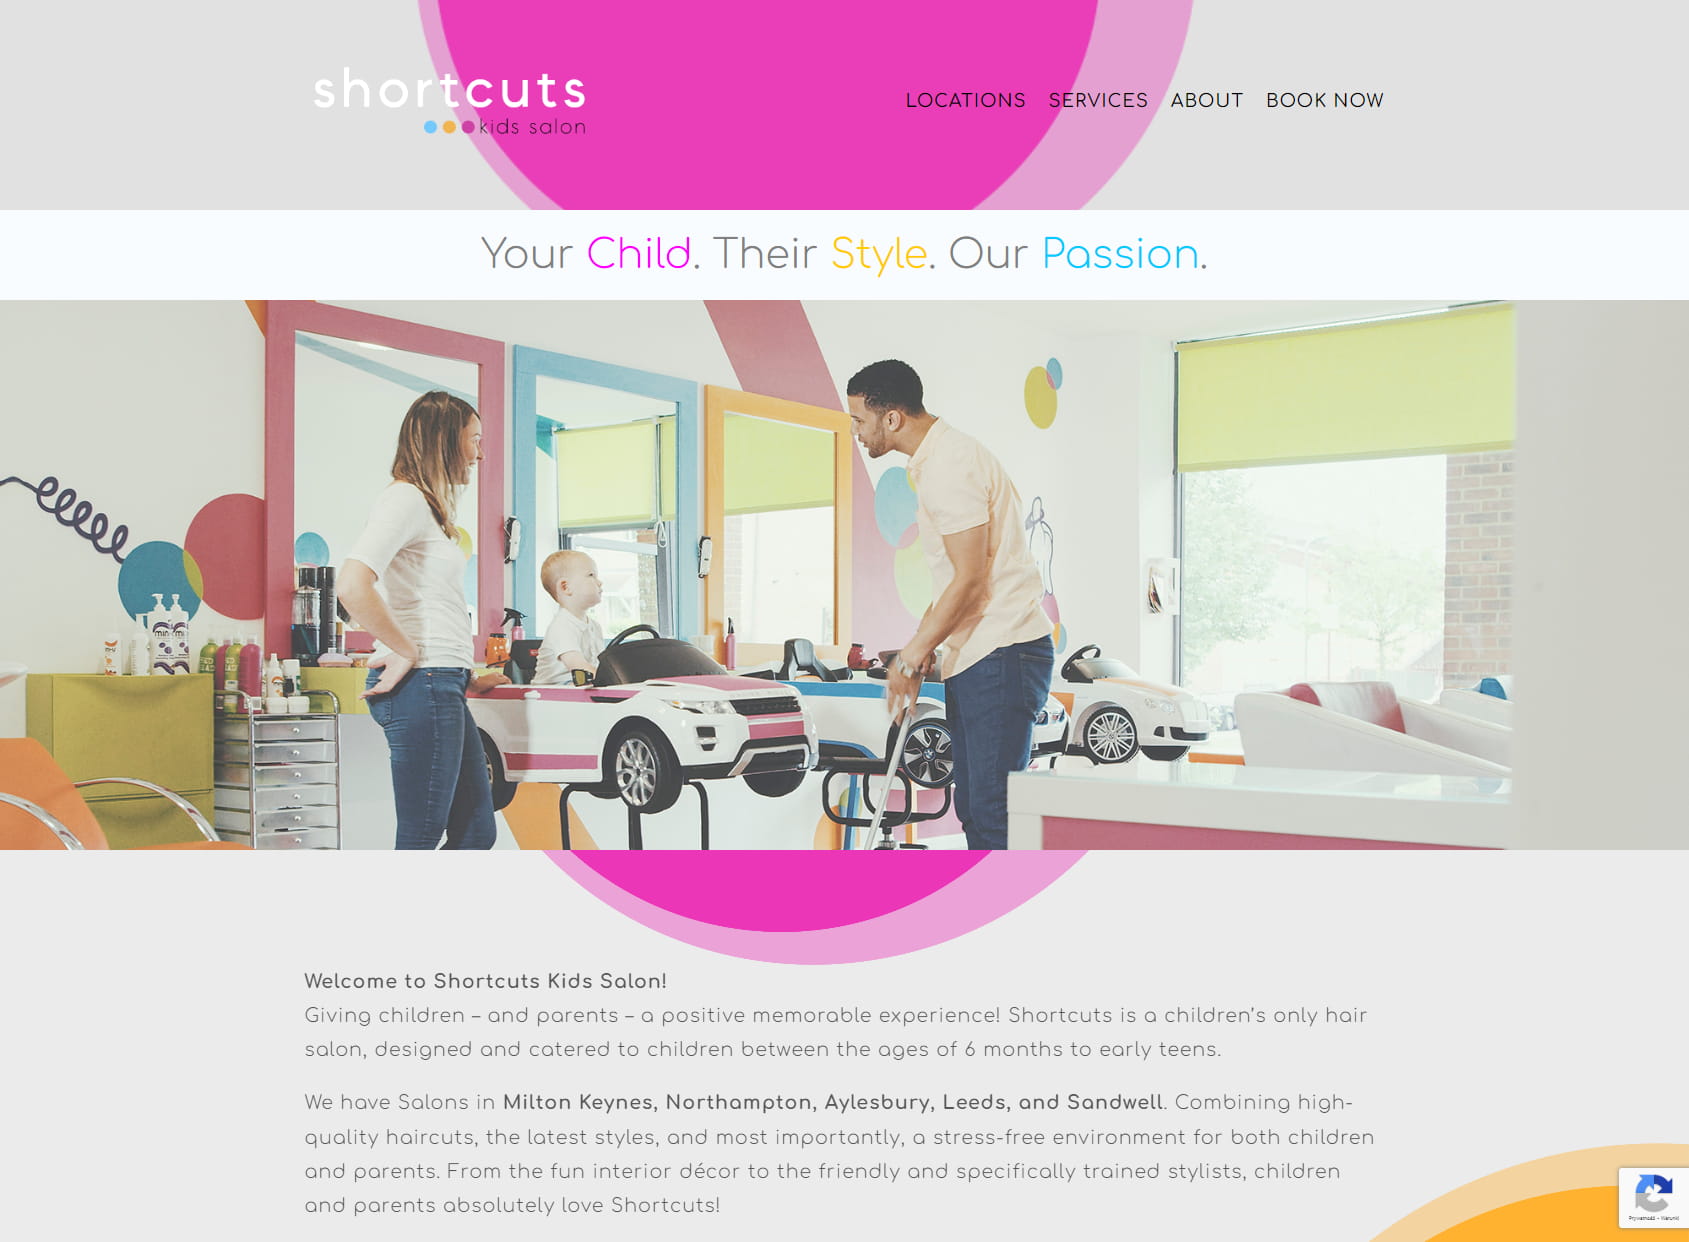 Shortcuts Kids Salon (Milton Keynes)